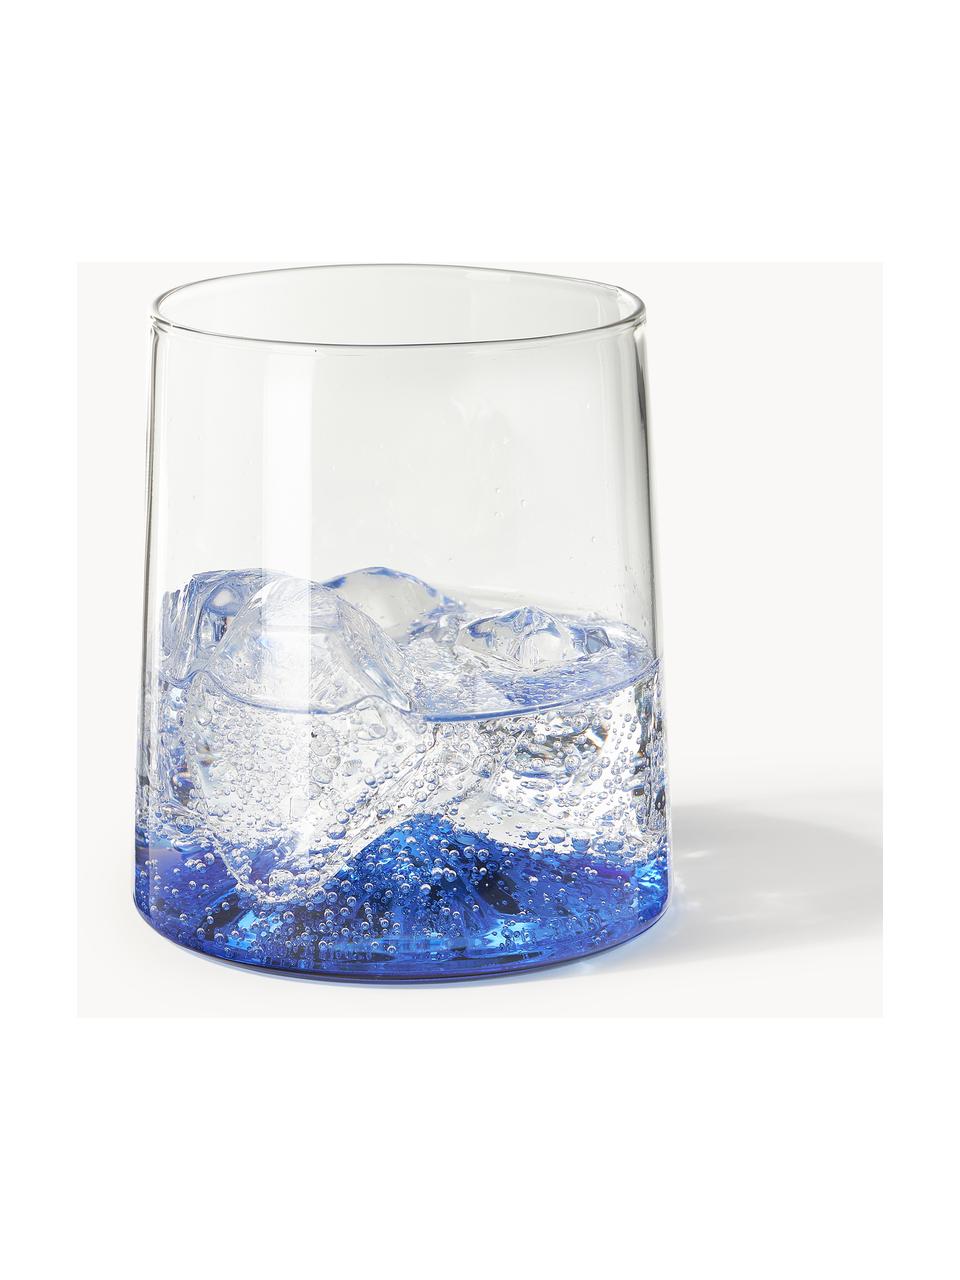 Bicchieri per acqua in vetro soffiato Hadley 4 pz, Vetro borosilicato soffiato

Scopri la versatilità delle stoviglie in vetro borosilicato per la tua casa! 
Il vetro borosilicato è un materiale di alta qualità, affidabile e robusto. È caratterizzato da un'eccezionale resistenza al calore e può quindi sopportare temperature estreme. È quindi particolarmente adatto per le bevande calde. Rispetto al vetro tradizionale, il vetro borosilicato è più resistente alla rottura e alle incrinature grazie alla sua composizione e struttura., Trasparente, blu, Ø 9 x Alt. 10 cm, 400 ml